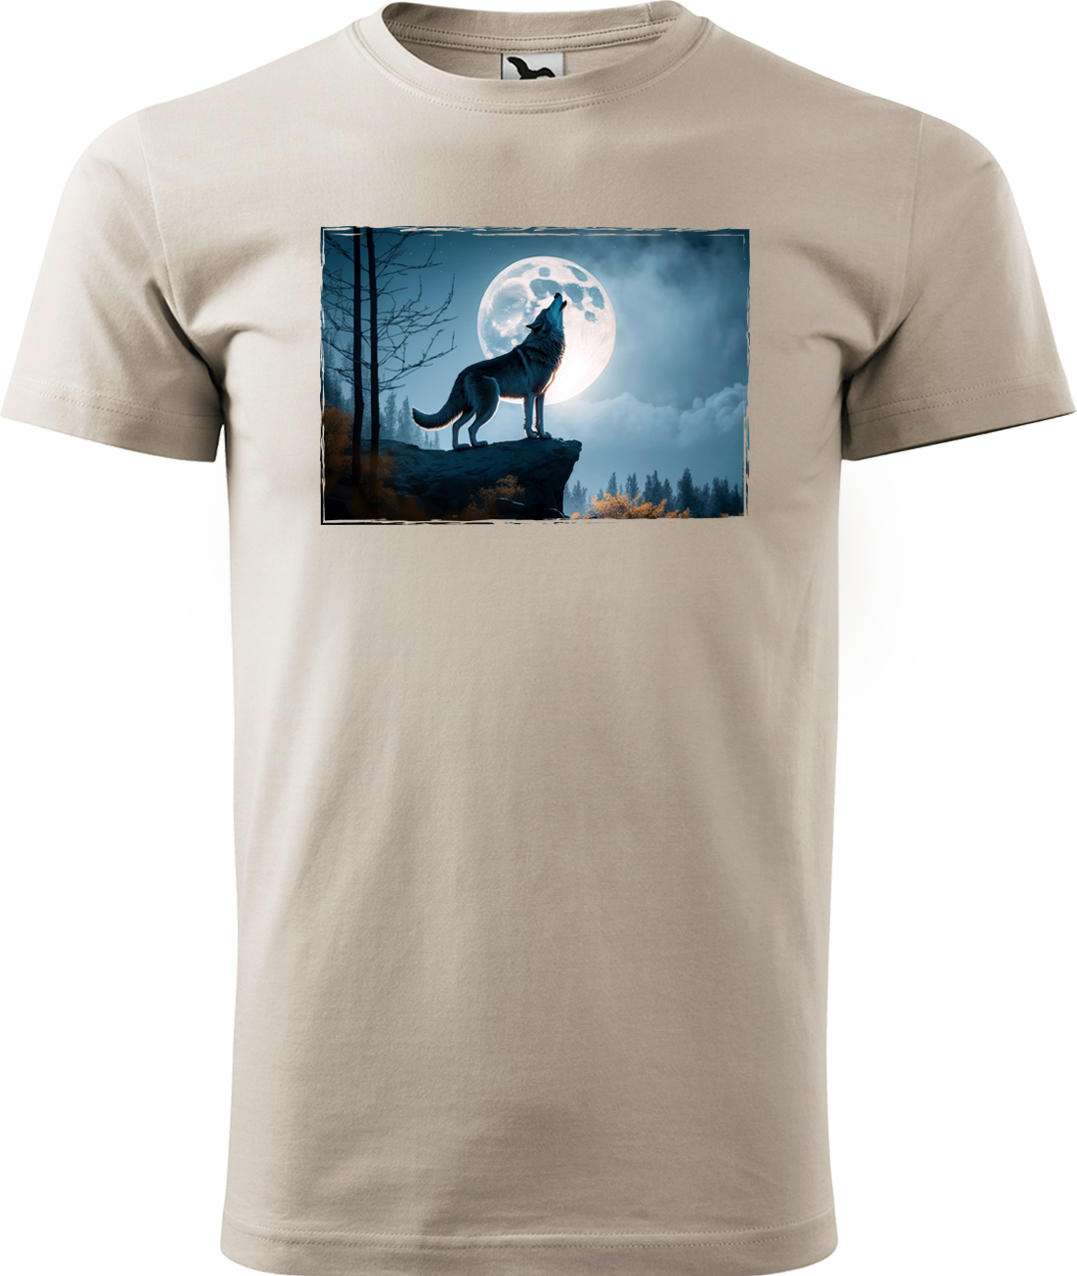 Pánské tričko s vlkem - Vyjící vlk Velikost: M, Barva: Béžová (51), Střih: pánský